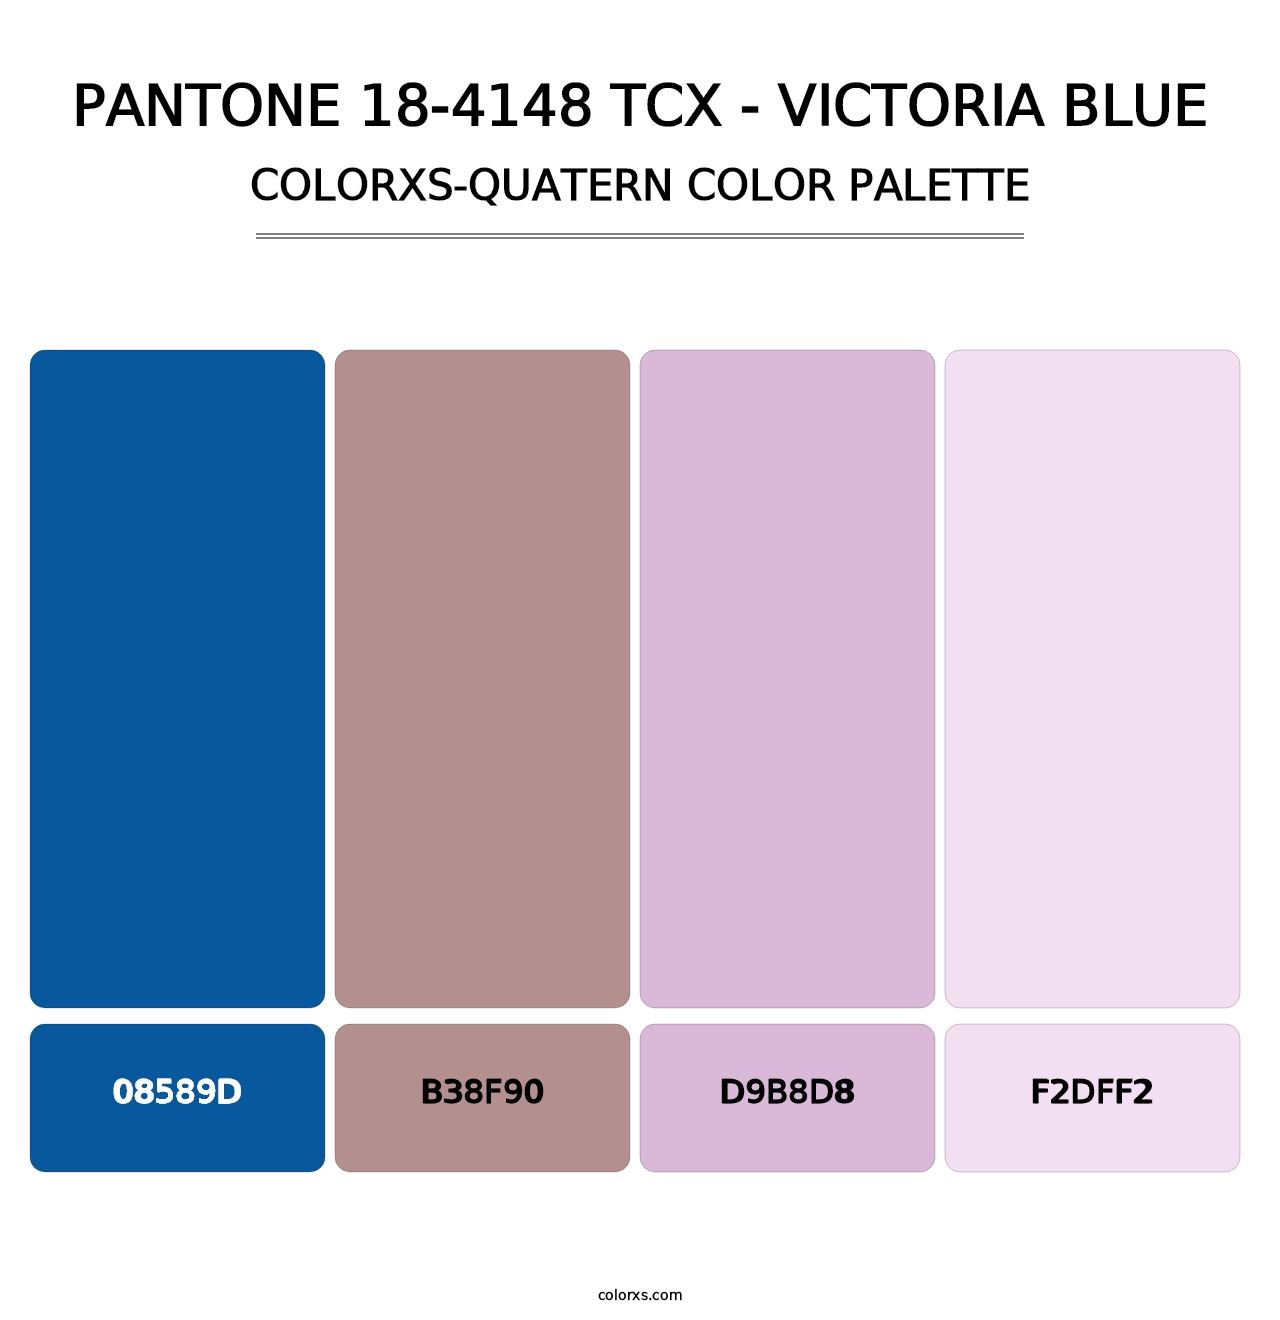 PANTONE 18-4148 TCX - Victoria Blue - Colorxs Quatern Palette